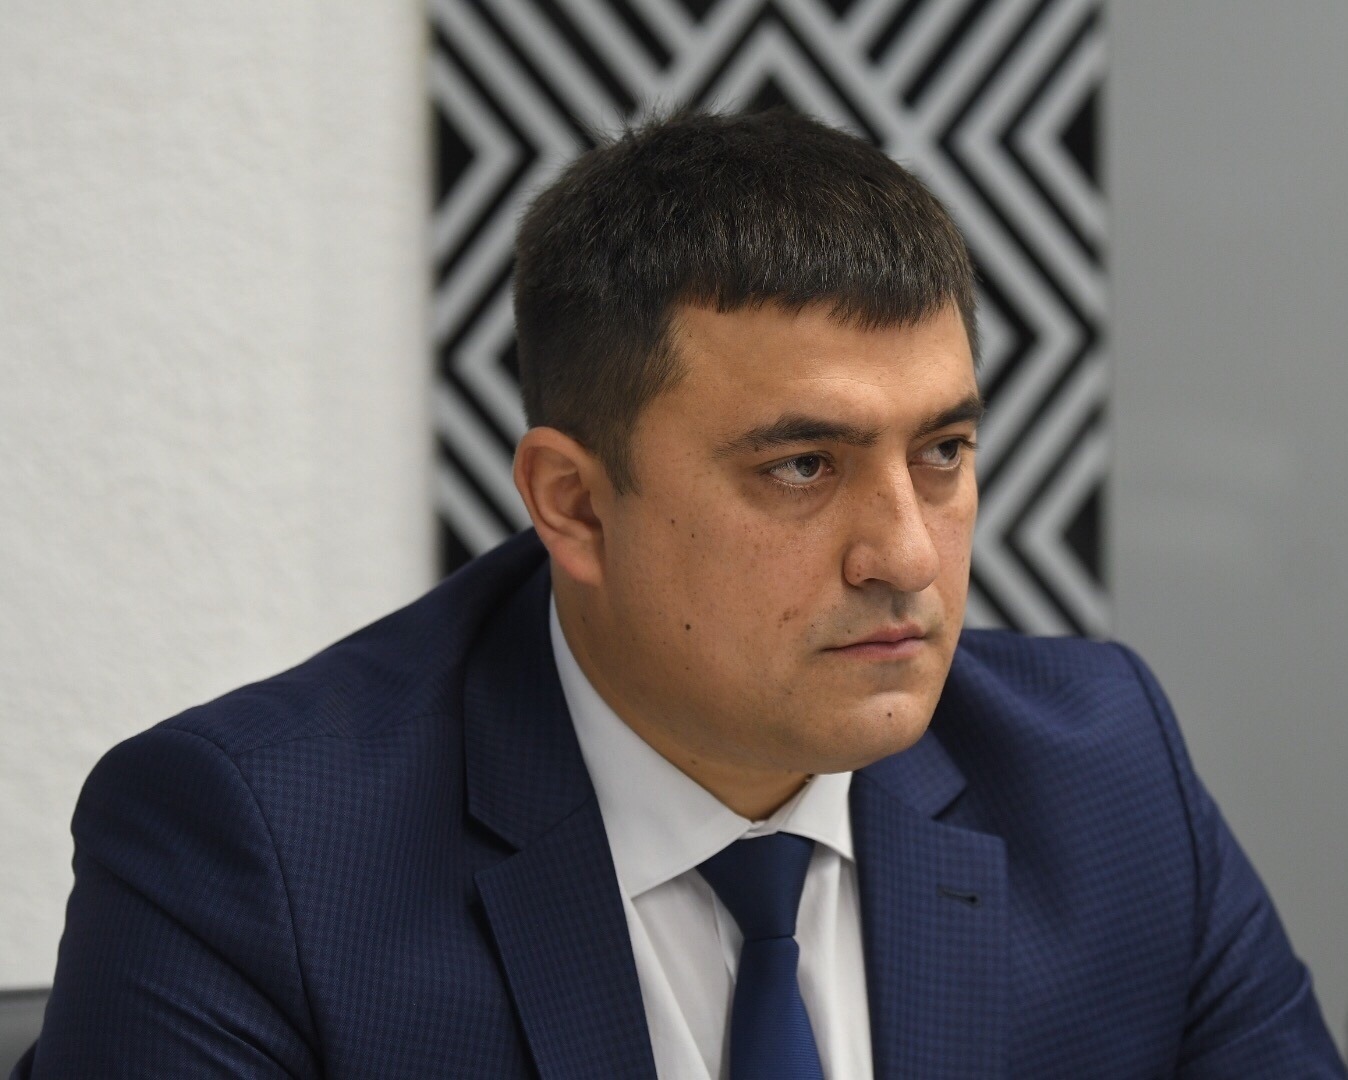 Уряд пропонує кардинально скоротити видатки для місцевих бюджетів, – Юрій Стефанчук